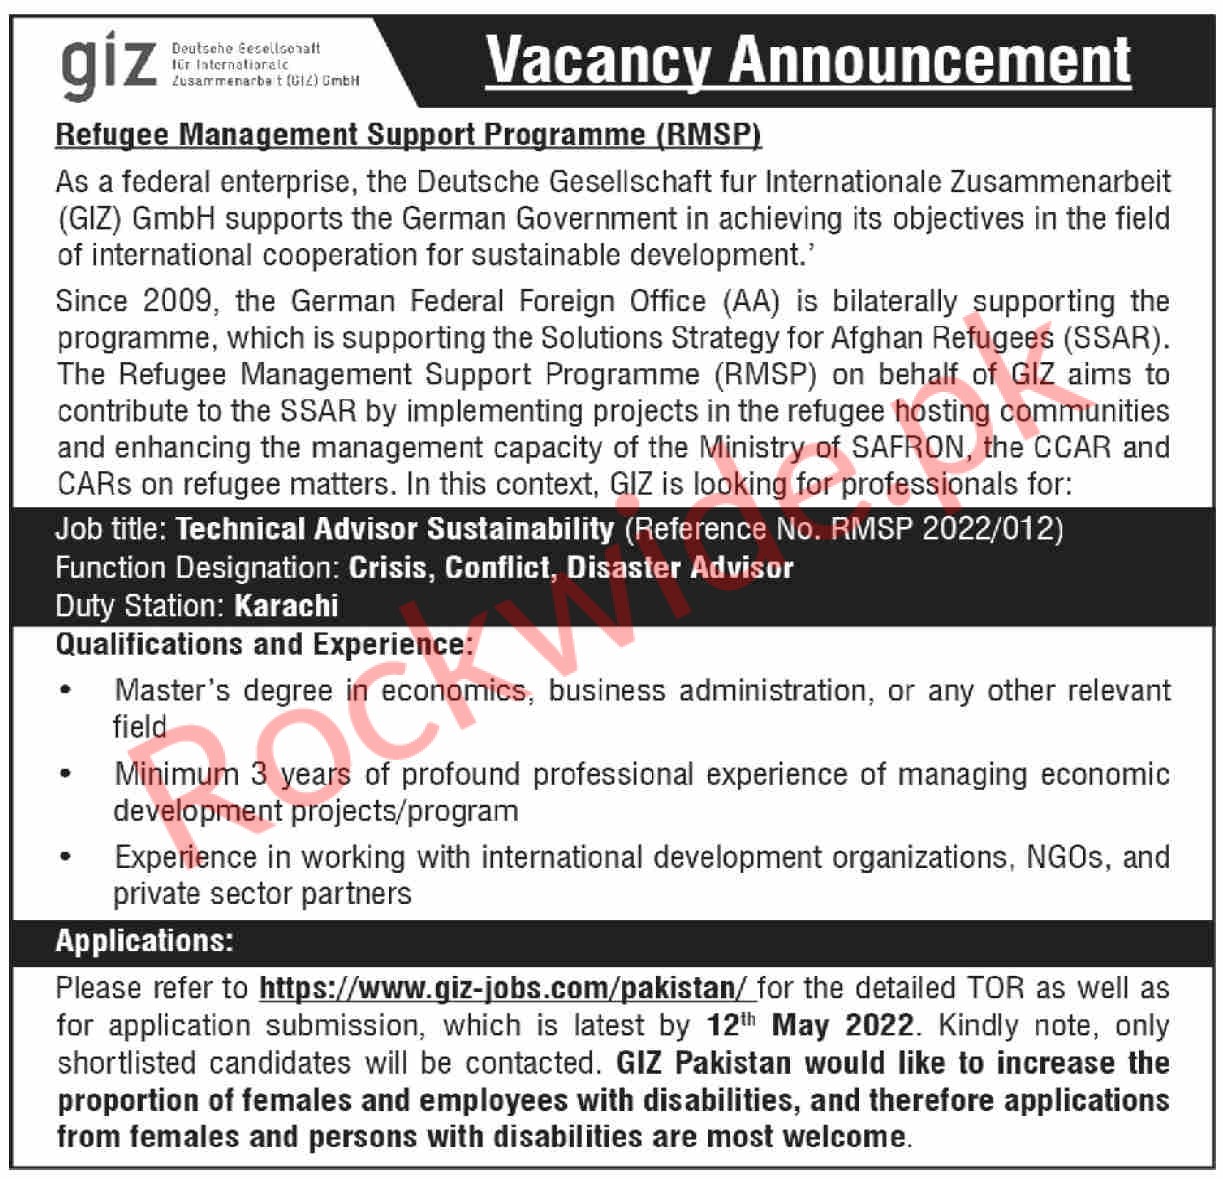 The Deutsche Gesellschaft für Internationale Zusammenarbeit GmbH (Giz) jobs in Karachi